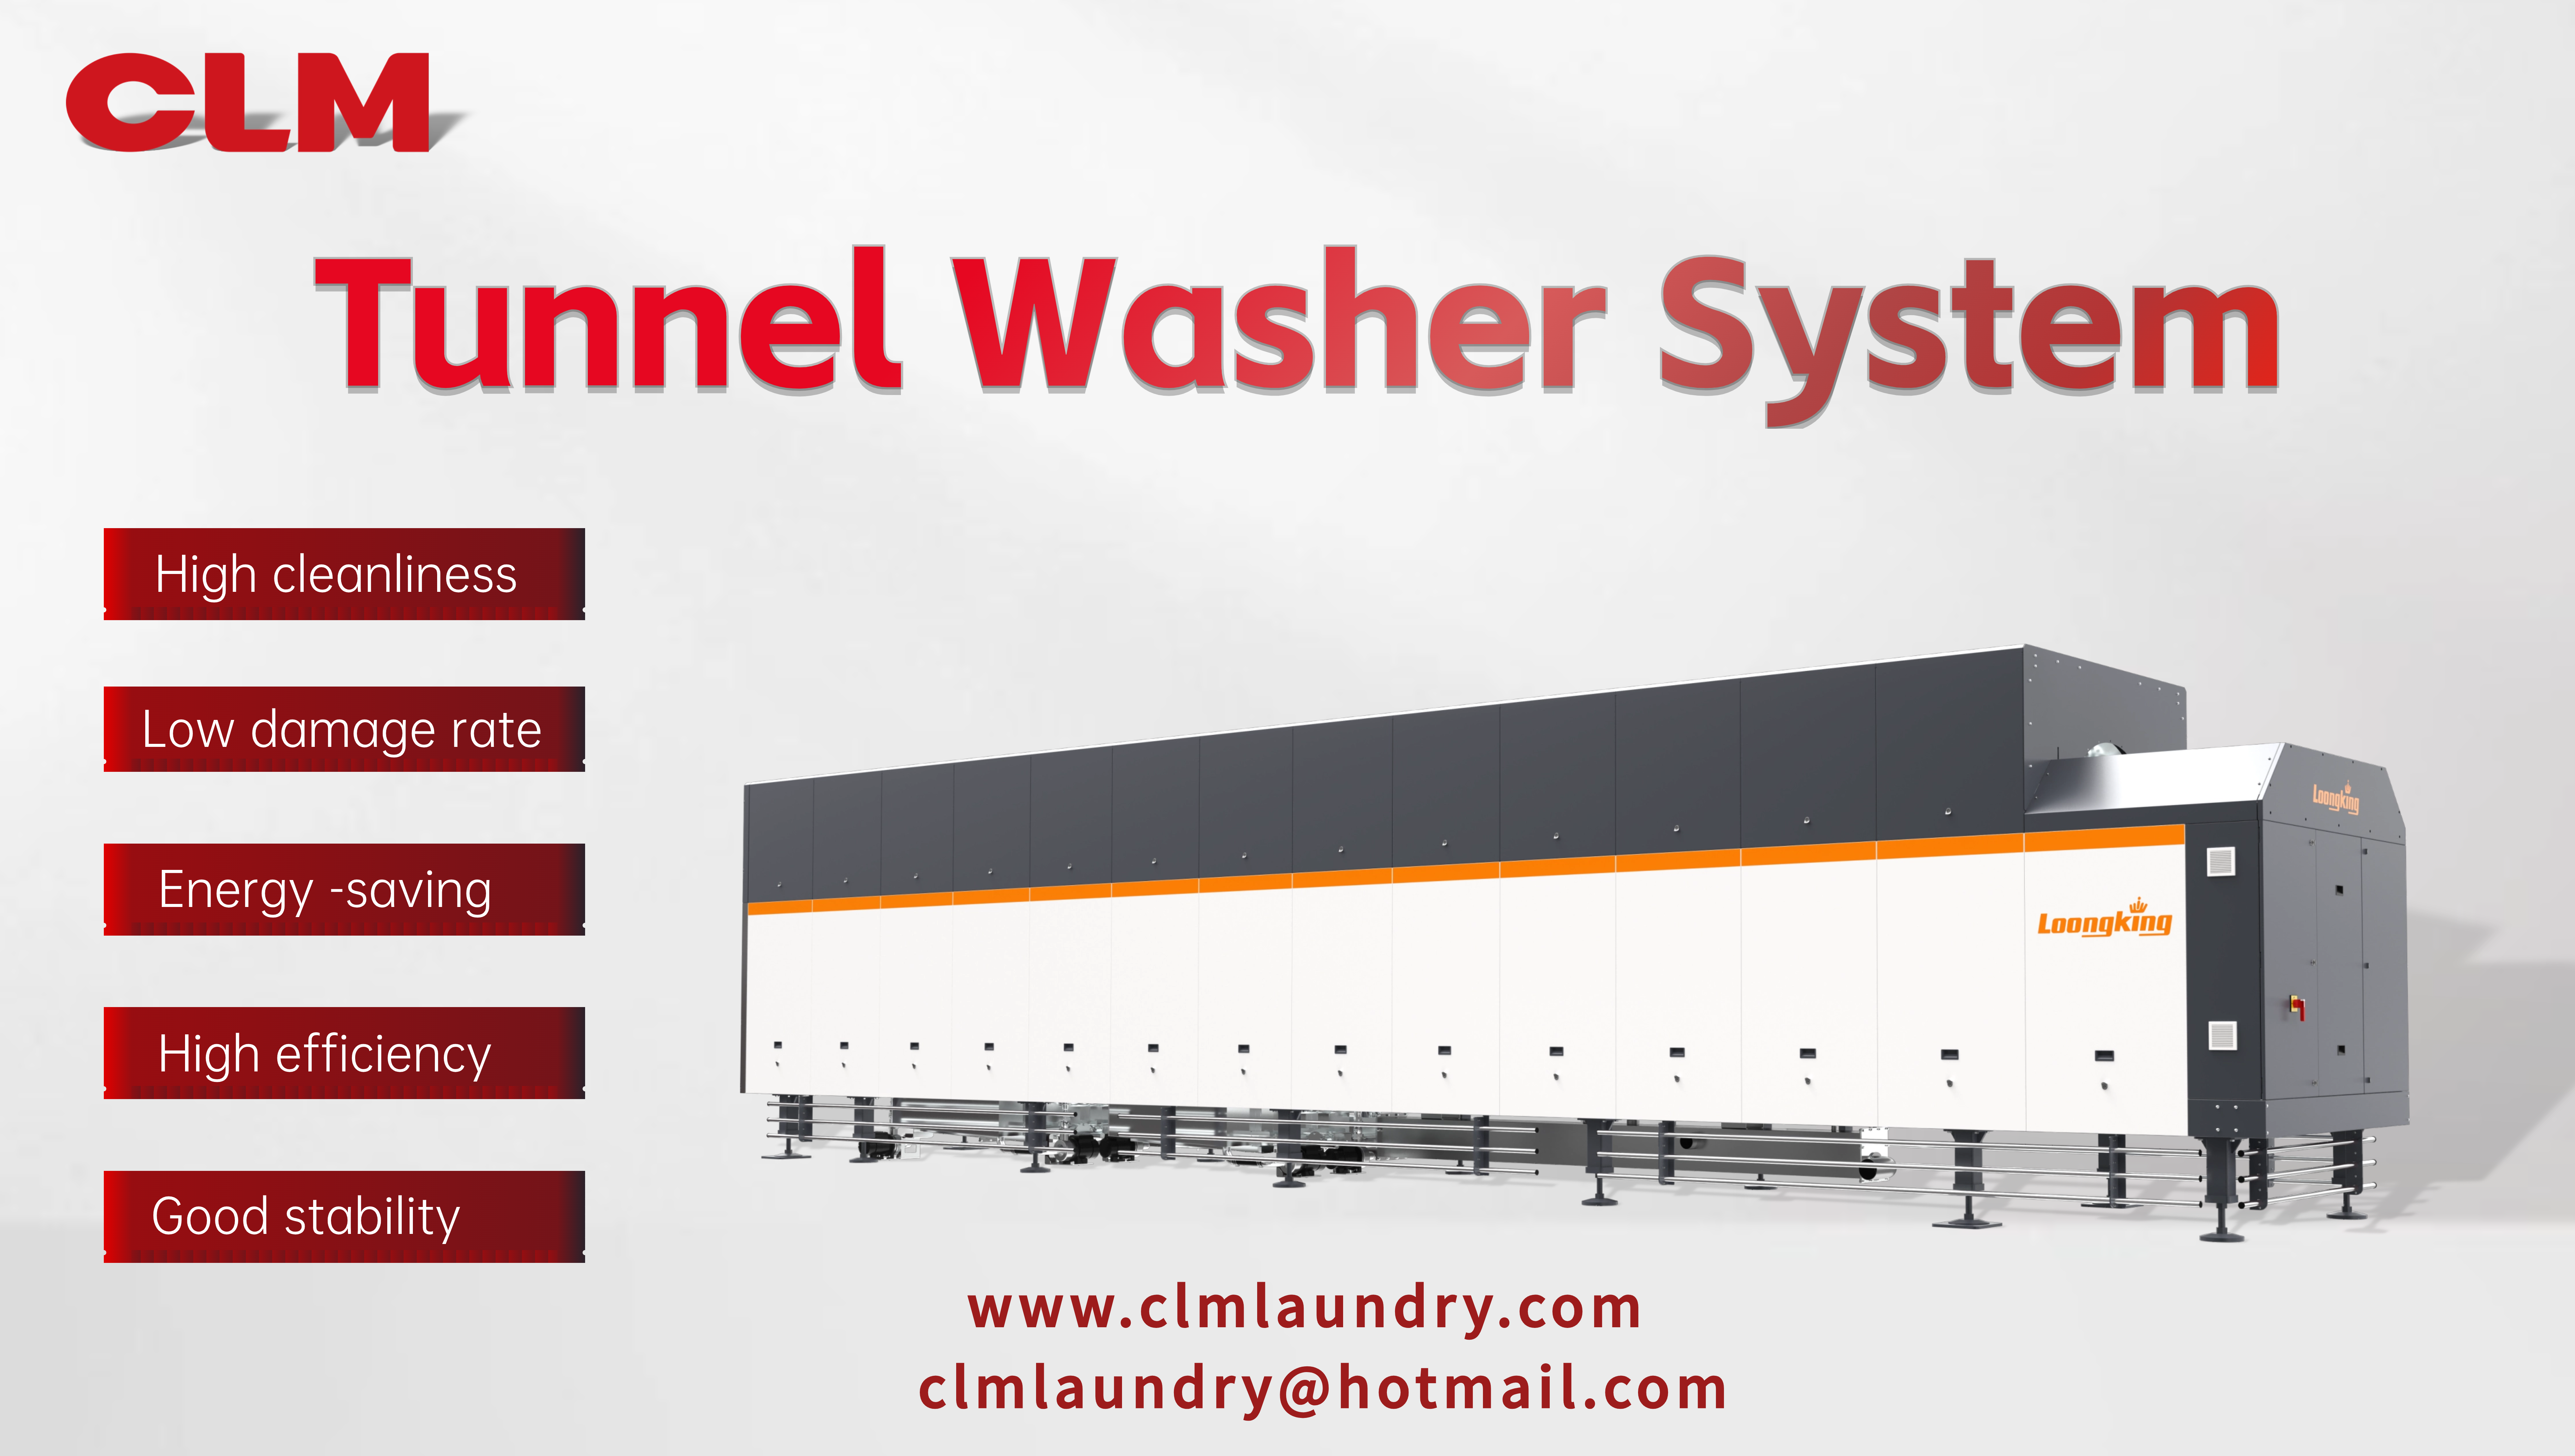 System myjni tunelowej CLM osiąga wydajność mycia 1,8 tony na godzinę przy zaledwie jednym pracowniku!